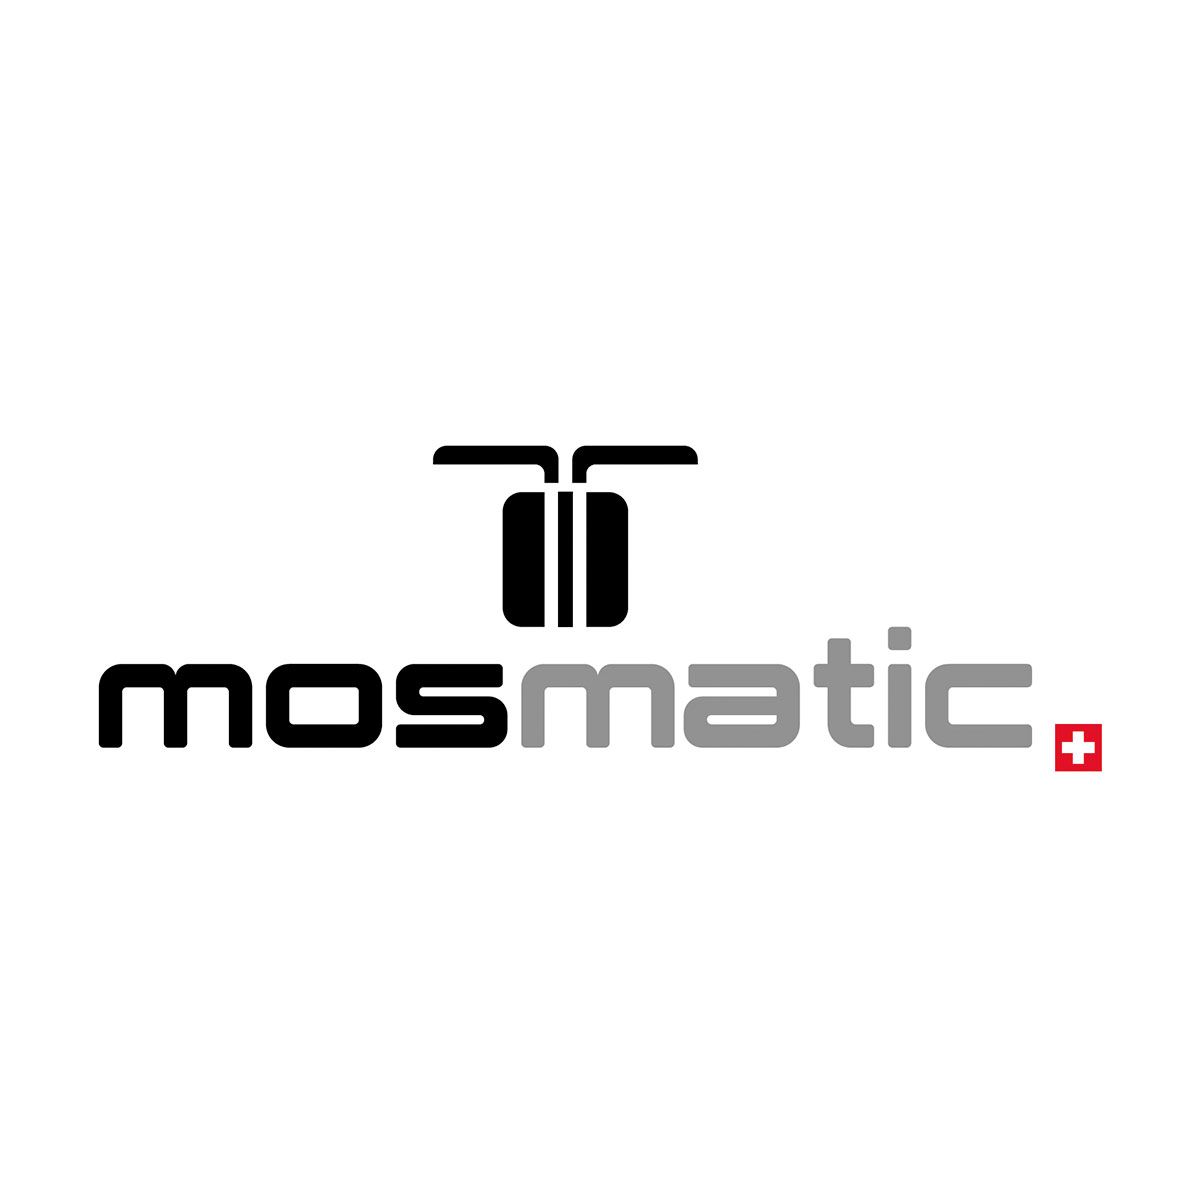 Mosmatic